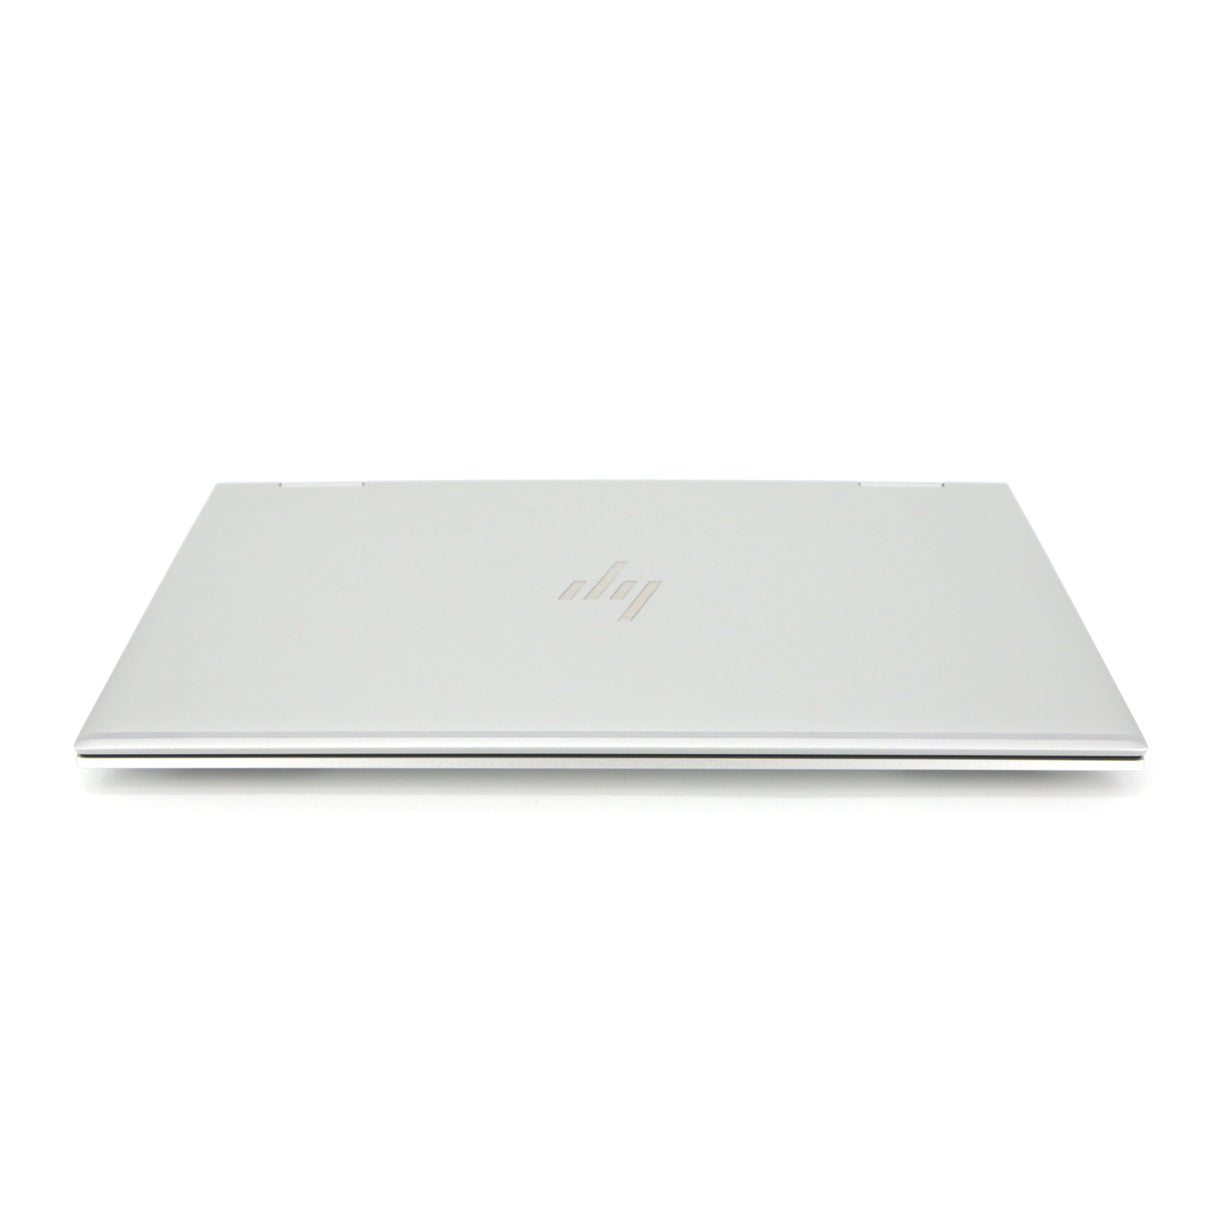 HP EliteBook x360 1030 G8 2-in-1 Laptop: 11th Gen i7, 16GB RAM, 512GB, Warranty - GreenGreen Store